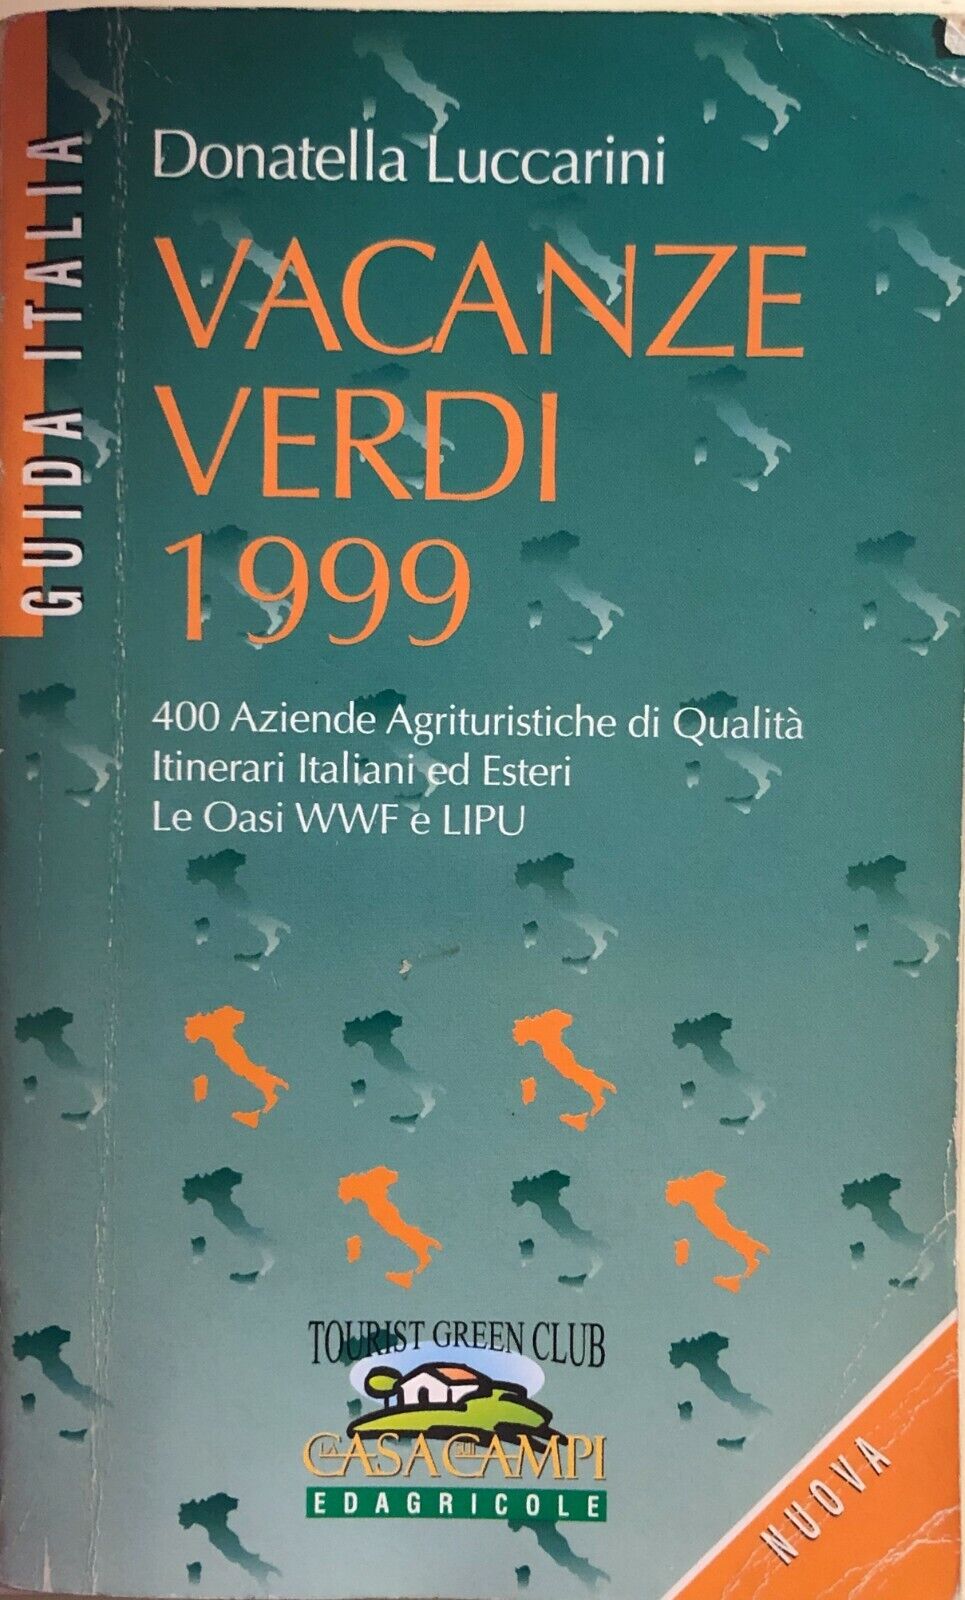 Vacanze verdi 1999 di Donatella Luccarini, 1999, Casa Campi Edagricole libro usato